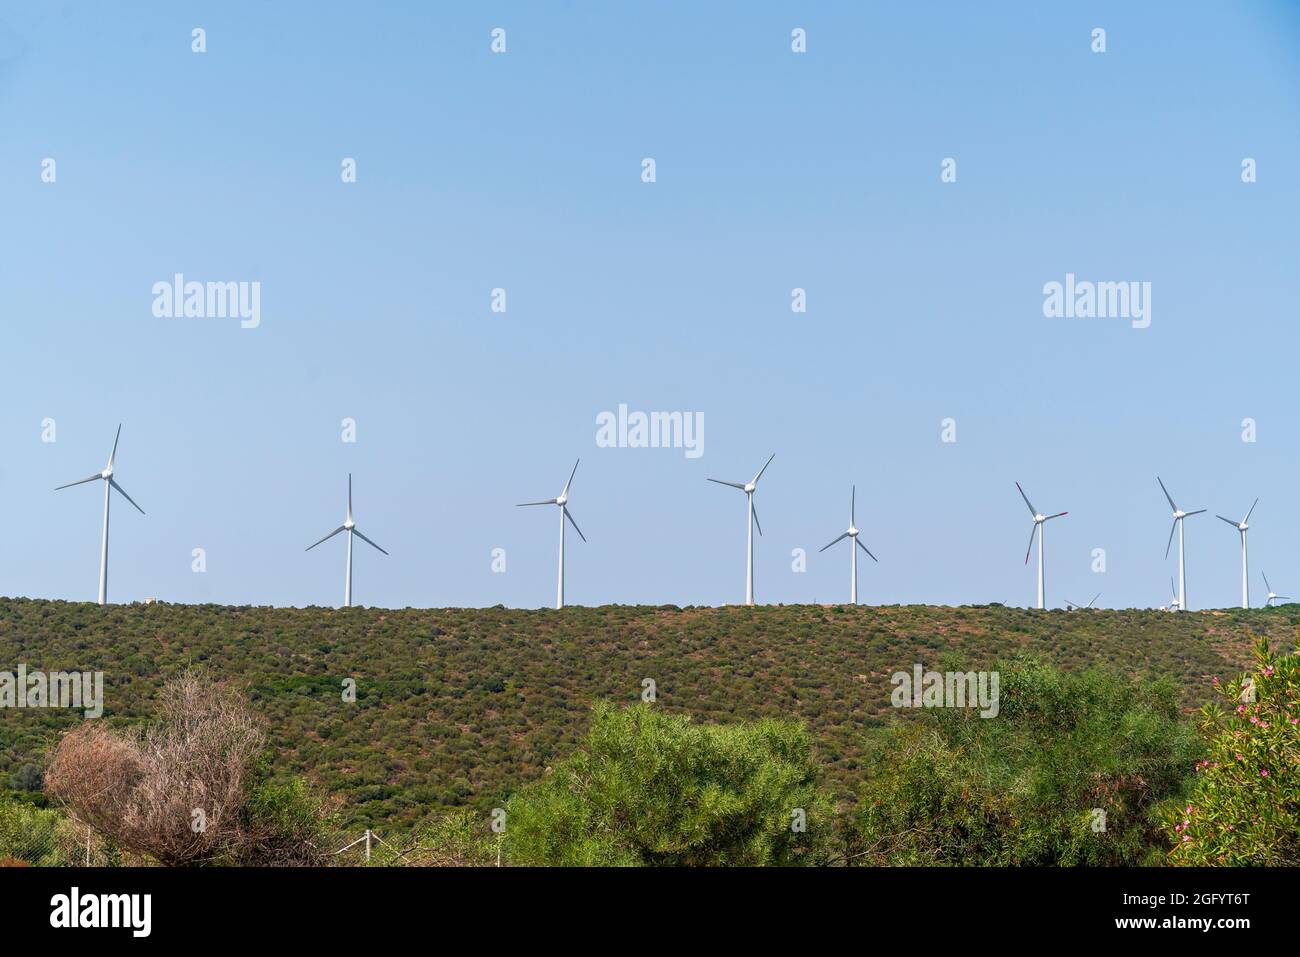 windmills on the field Stock Photo